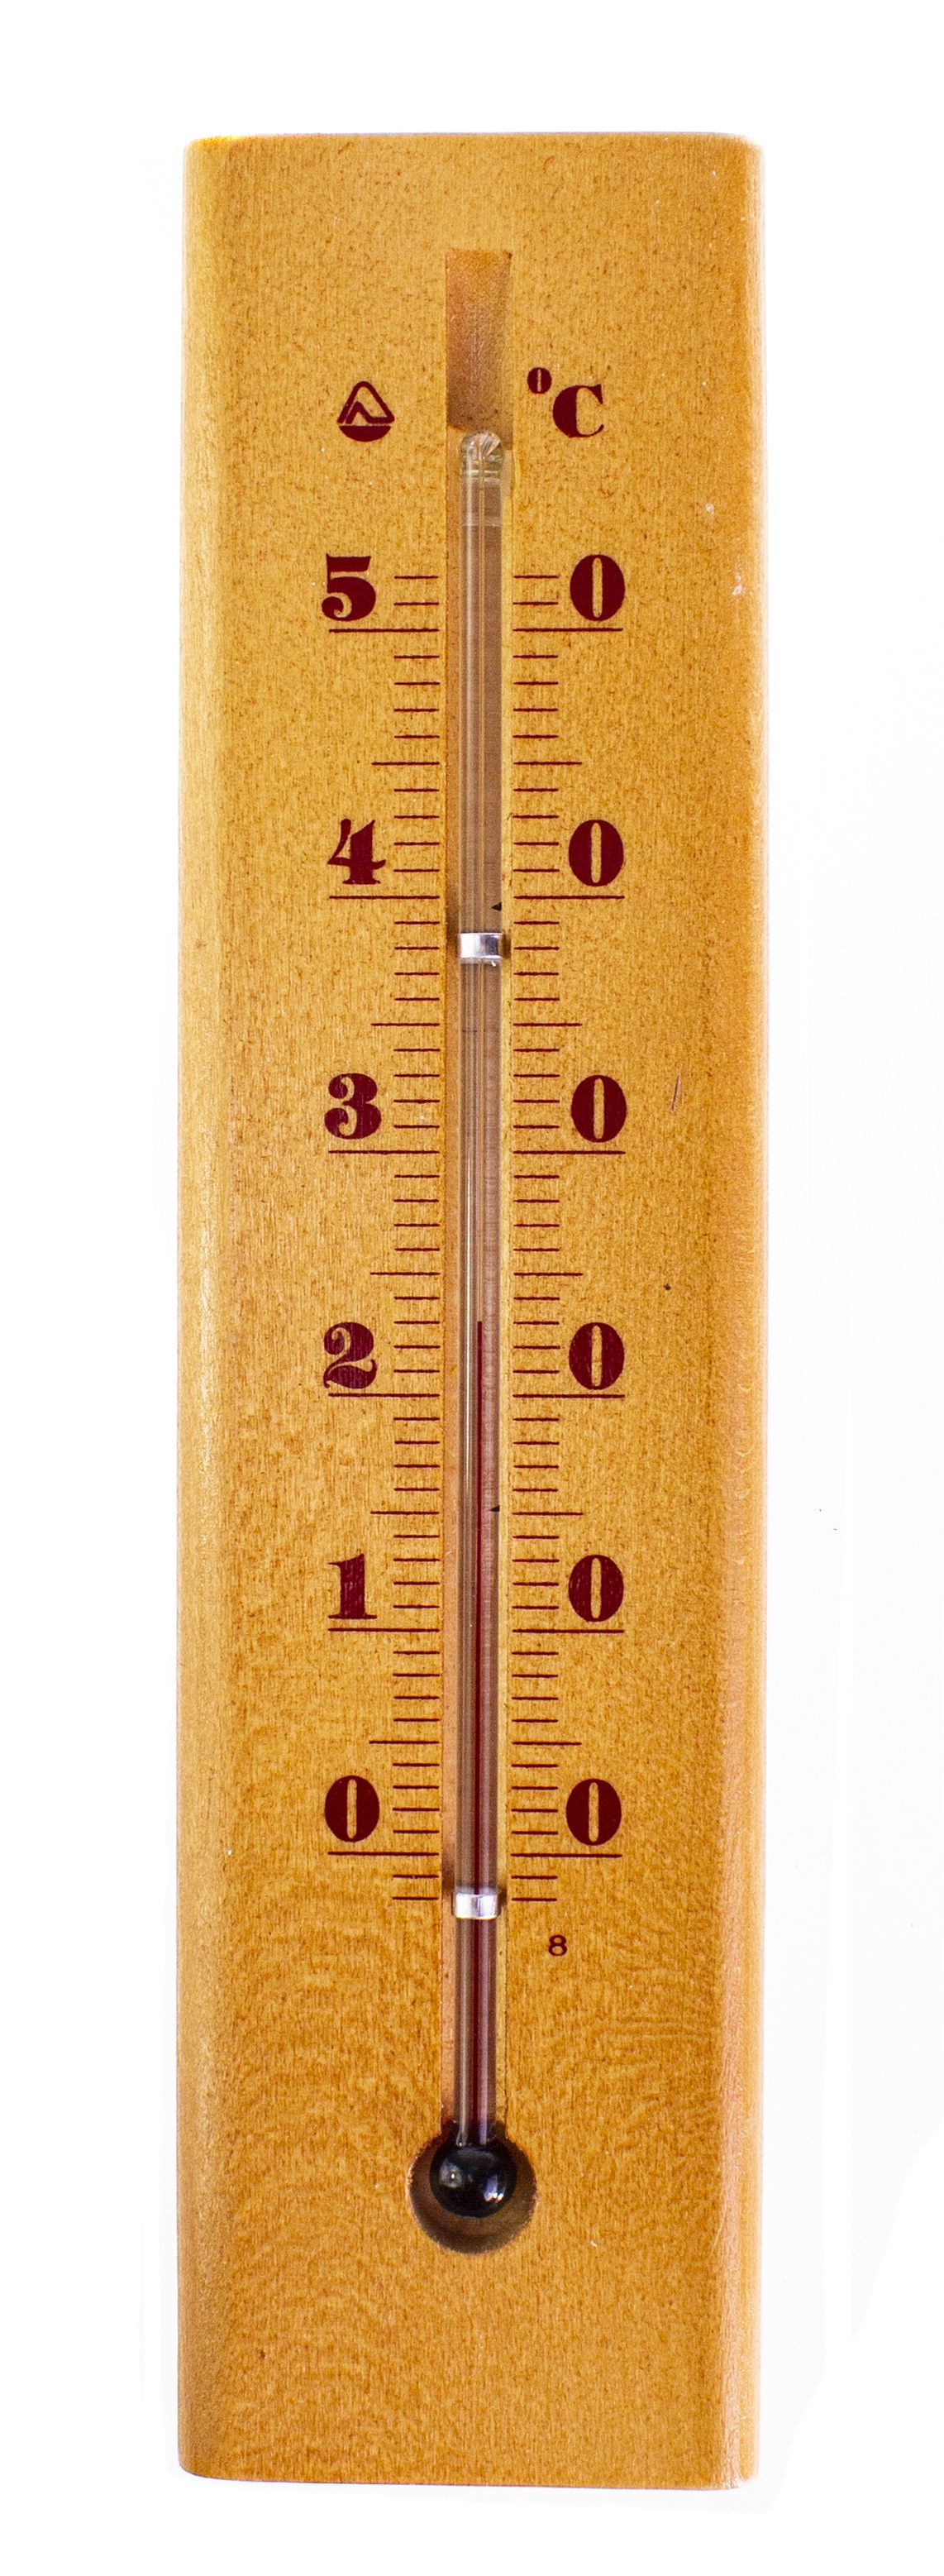 Термометр садовый PROFFI комнатный, настенный, деревянный, бежевый